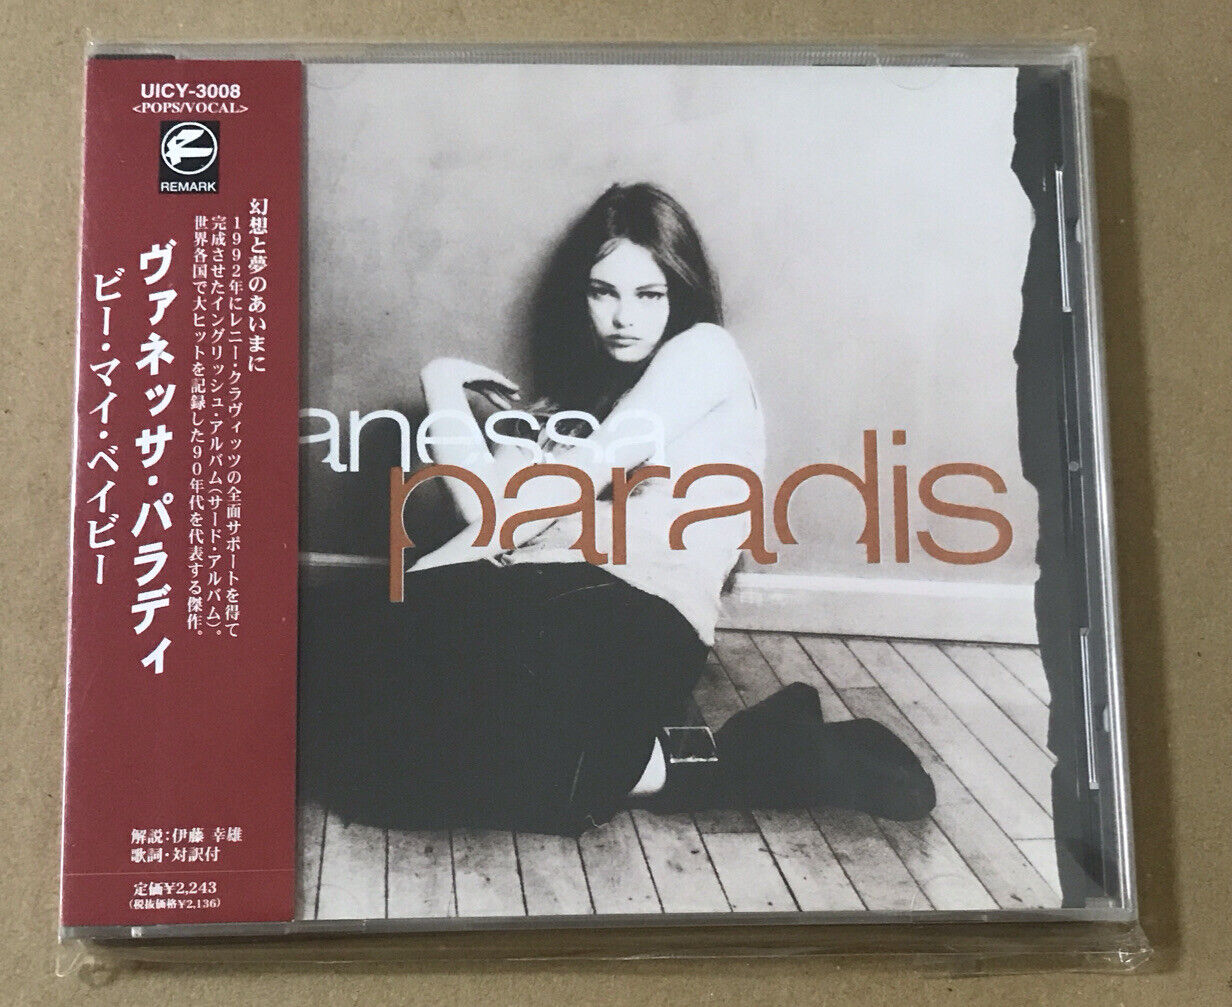 Vanessa Paradis Rare Japanese Cd Album +OBI +Lyric Sheet Lenny Kravitz